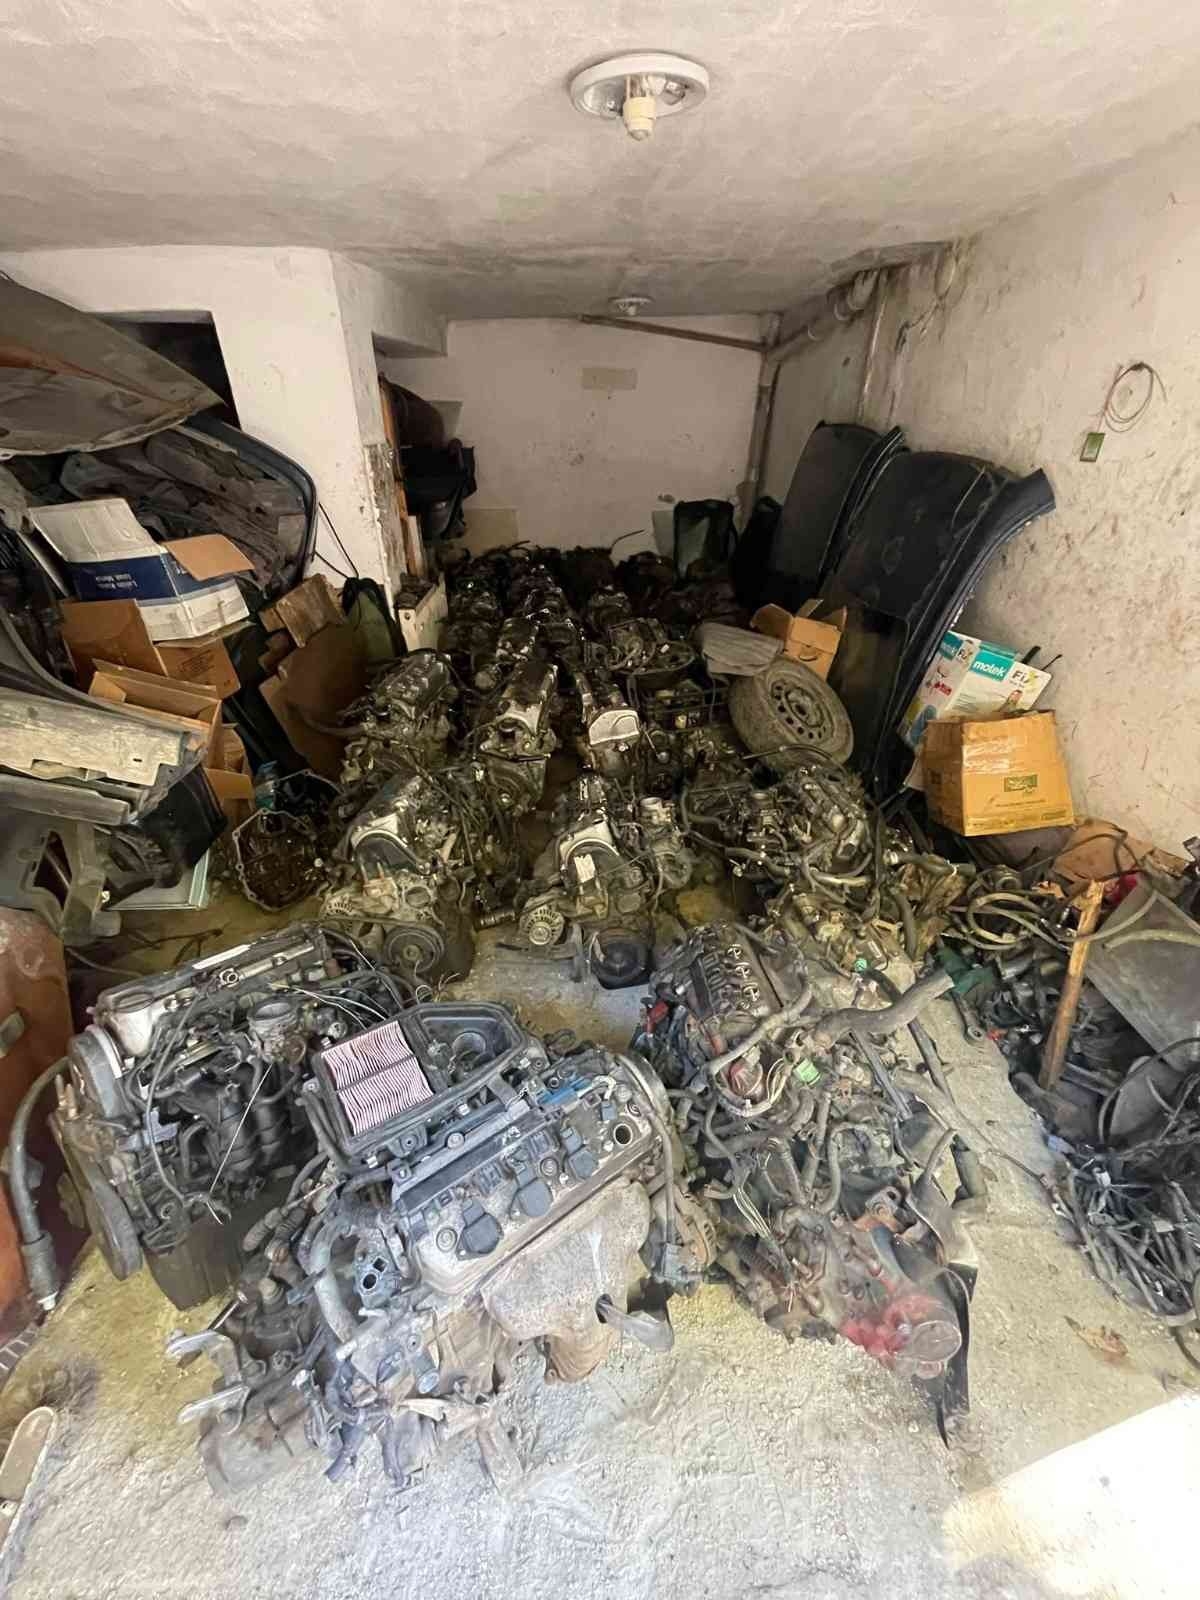 Bayrampaşa’da kaçakçılık operasyonu: 13 adet araç motoru yakalandı
